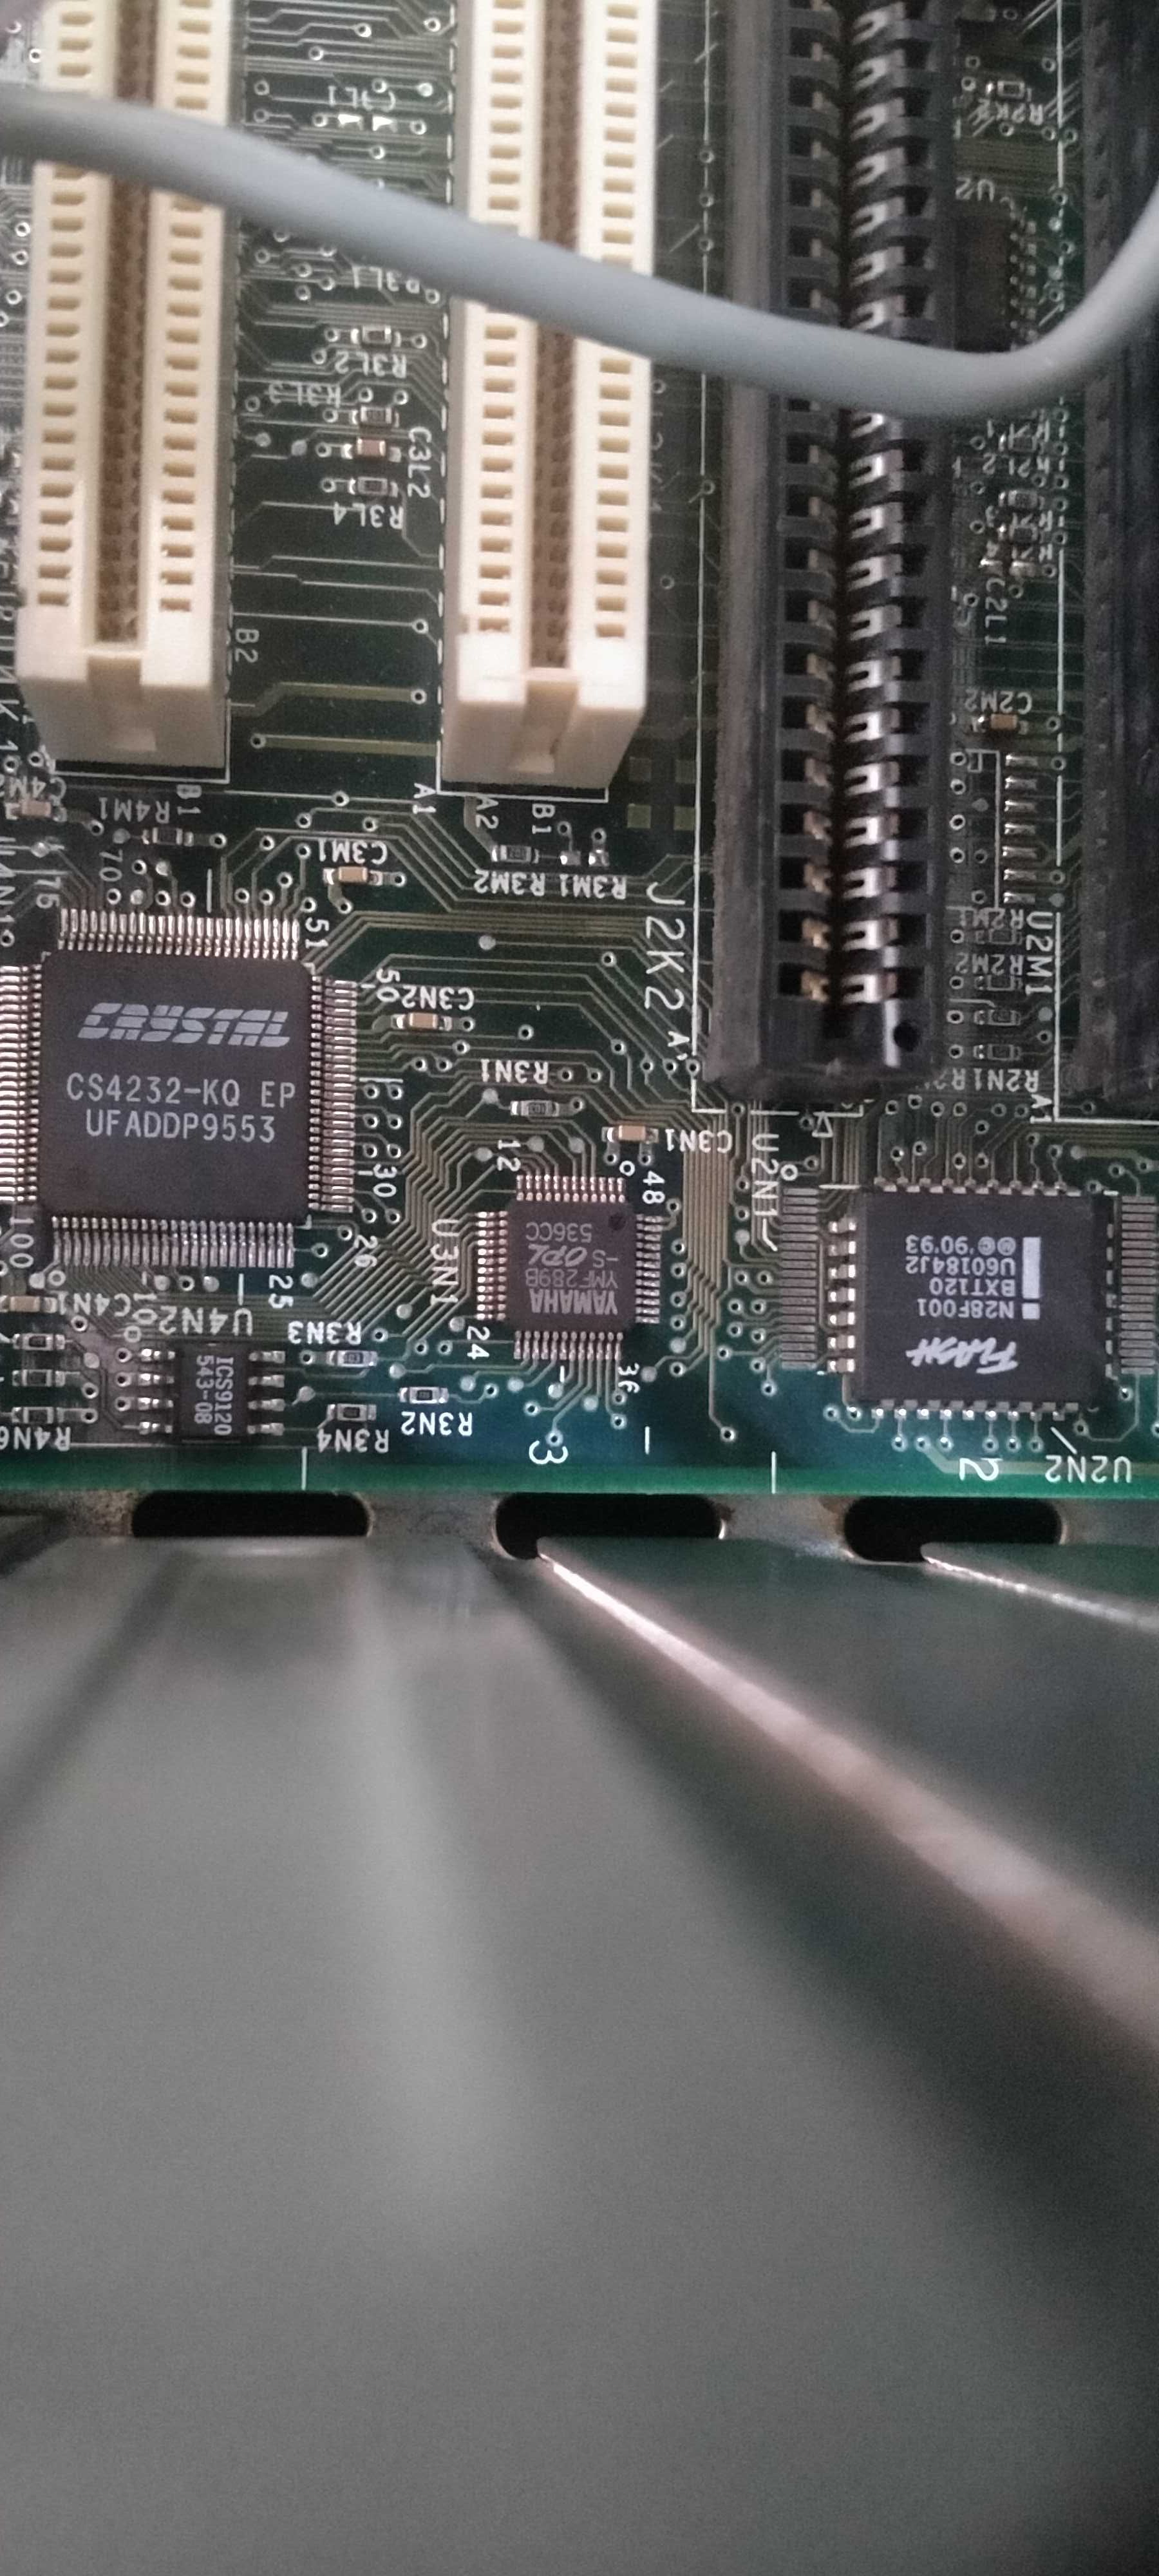 Taitec Pentium 166mhz 32mb Ram